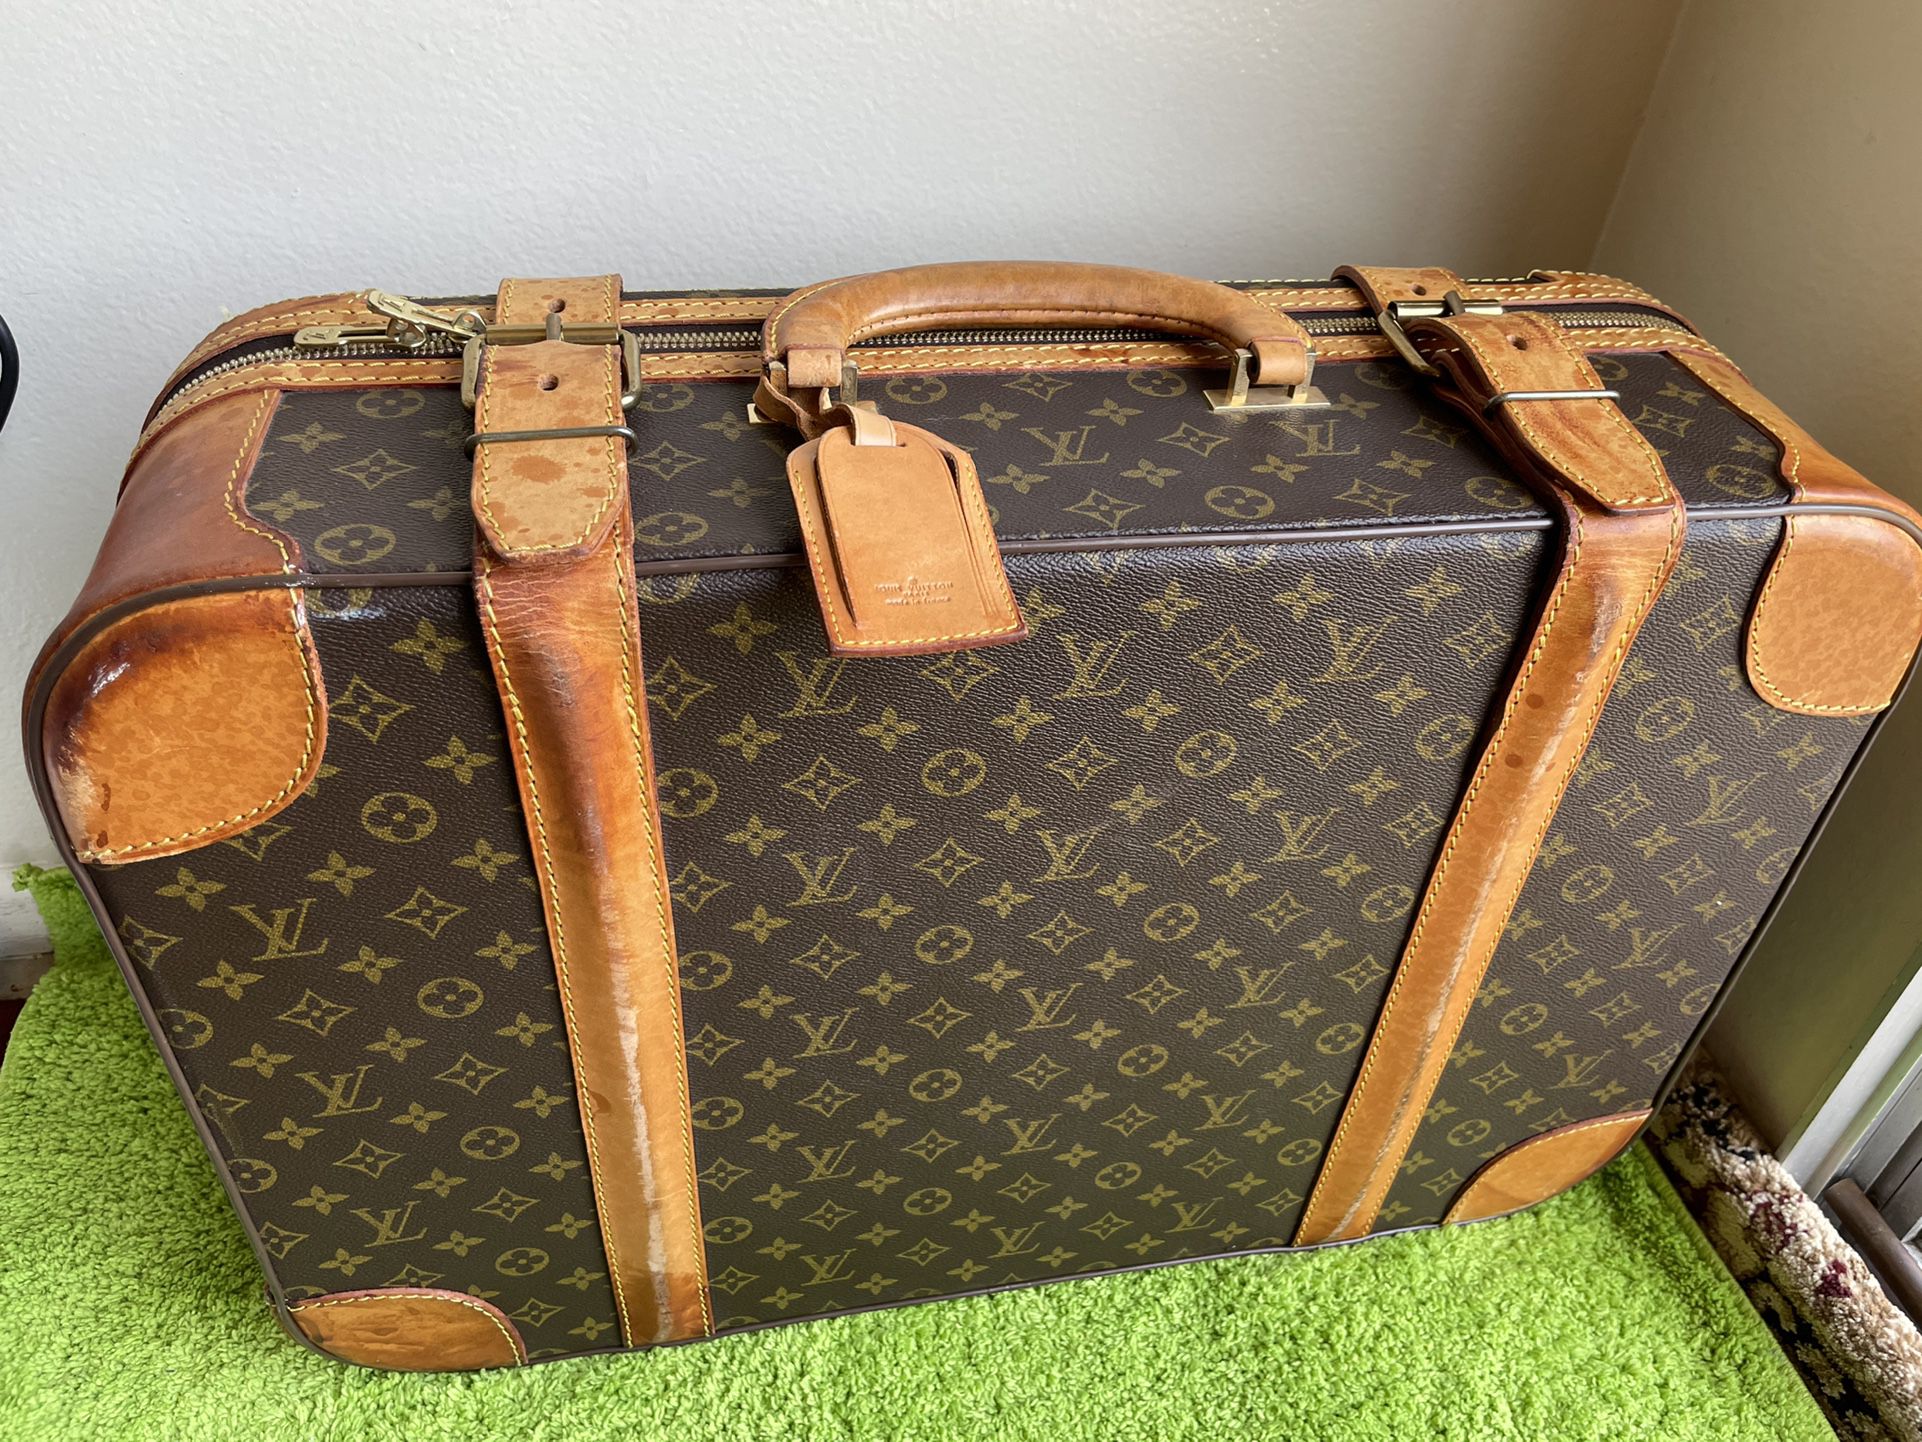 suitcase vintage louis-vuitton